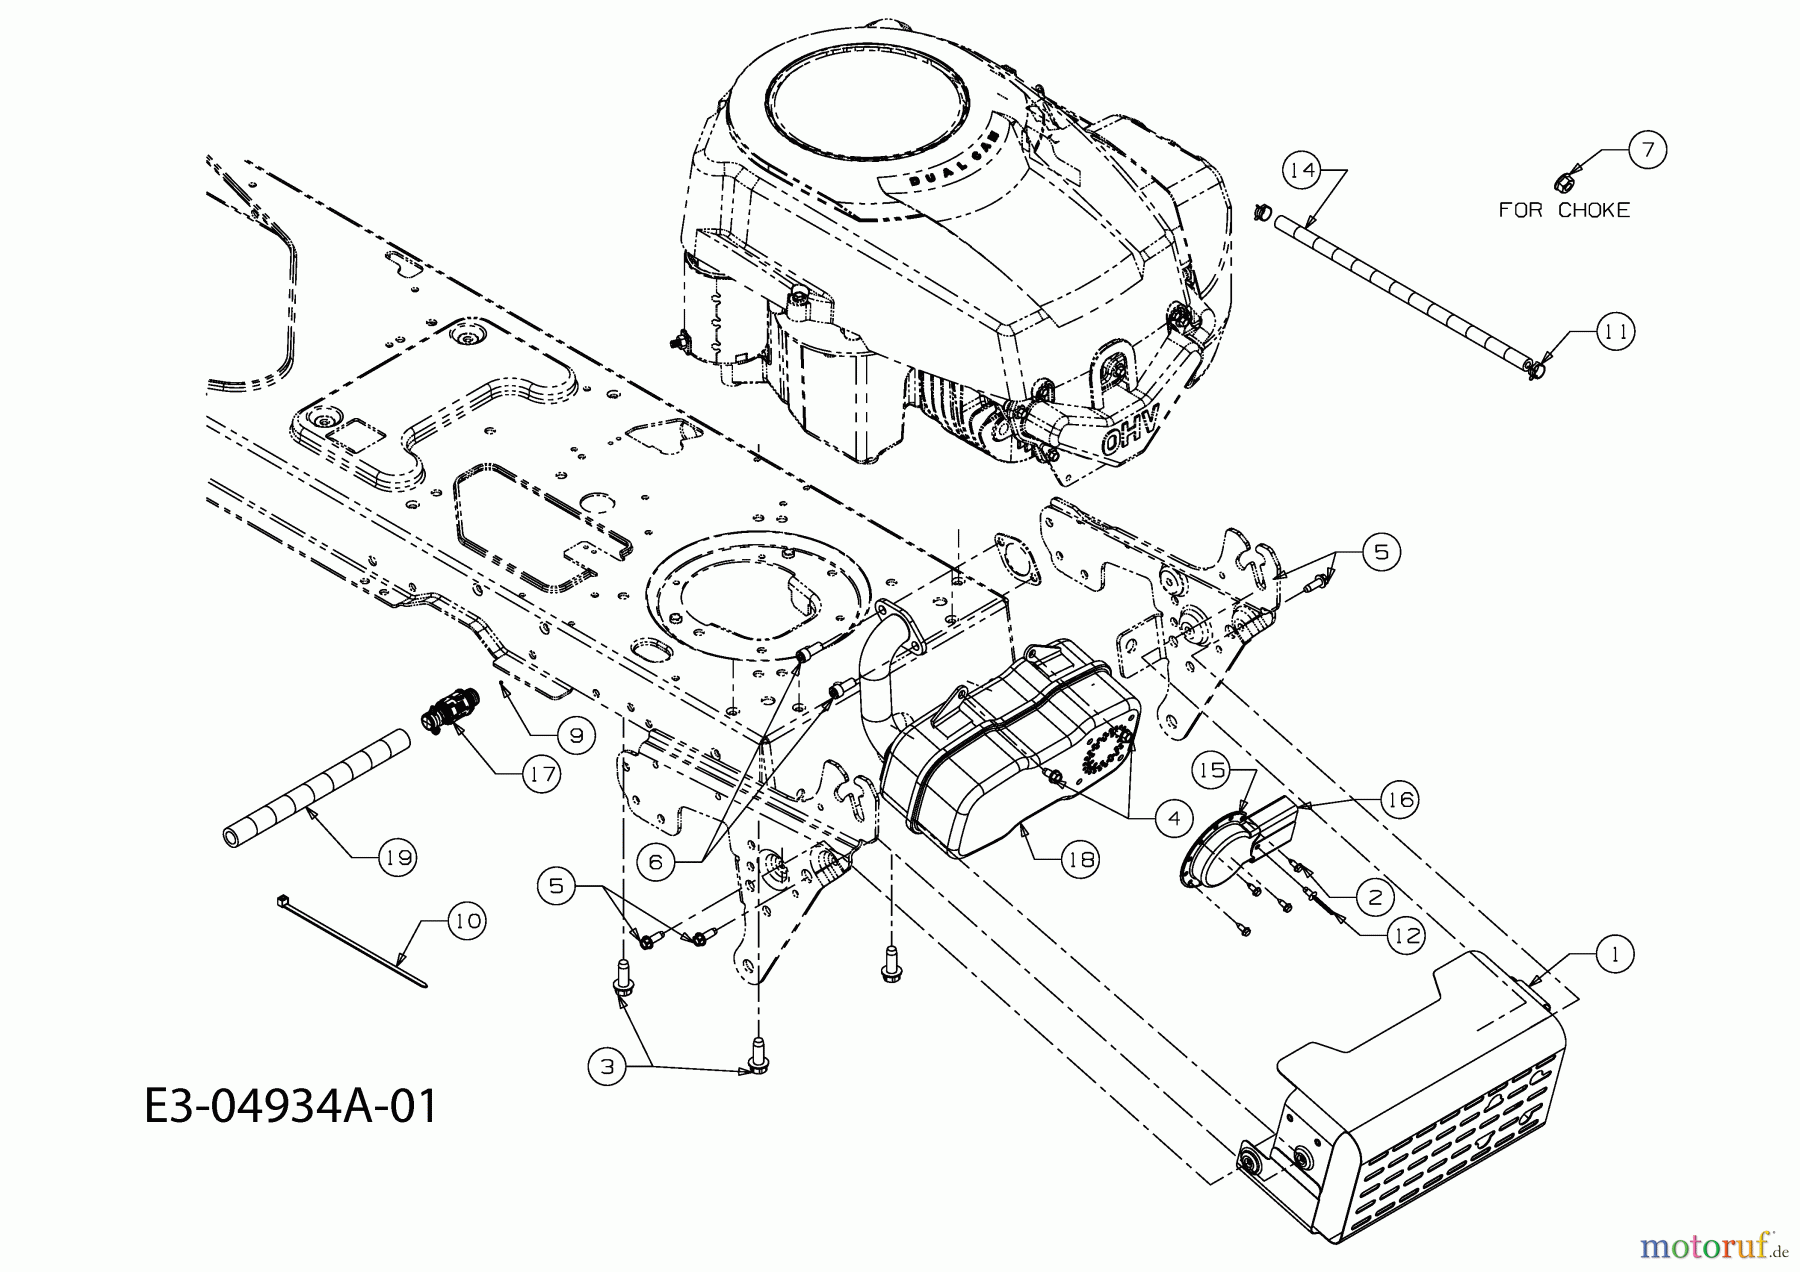  Gutbrod Rasentraktoren GLX 92 RA 13DV50GE490  (2009) Motorzubehör